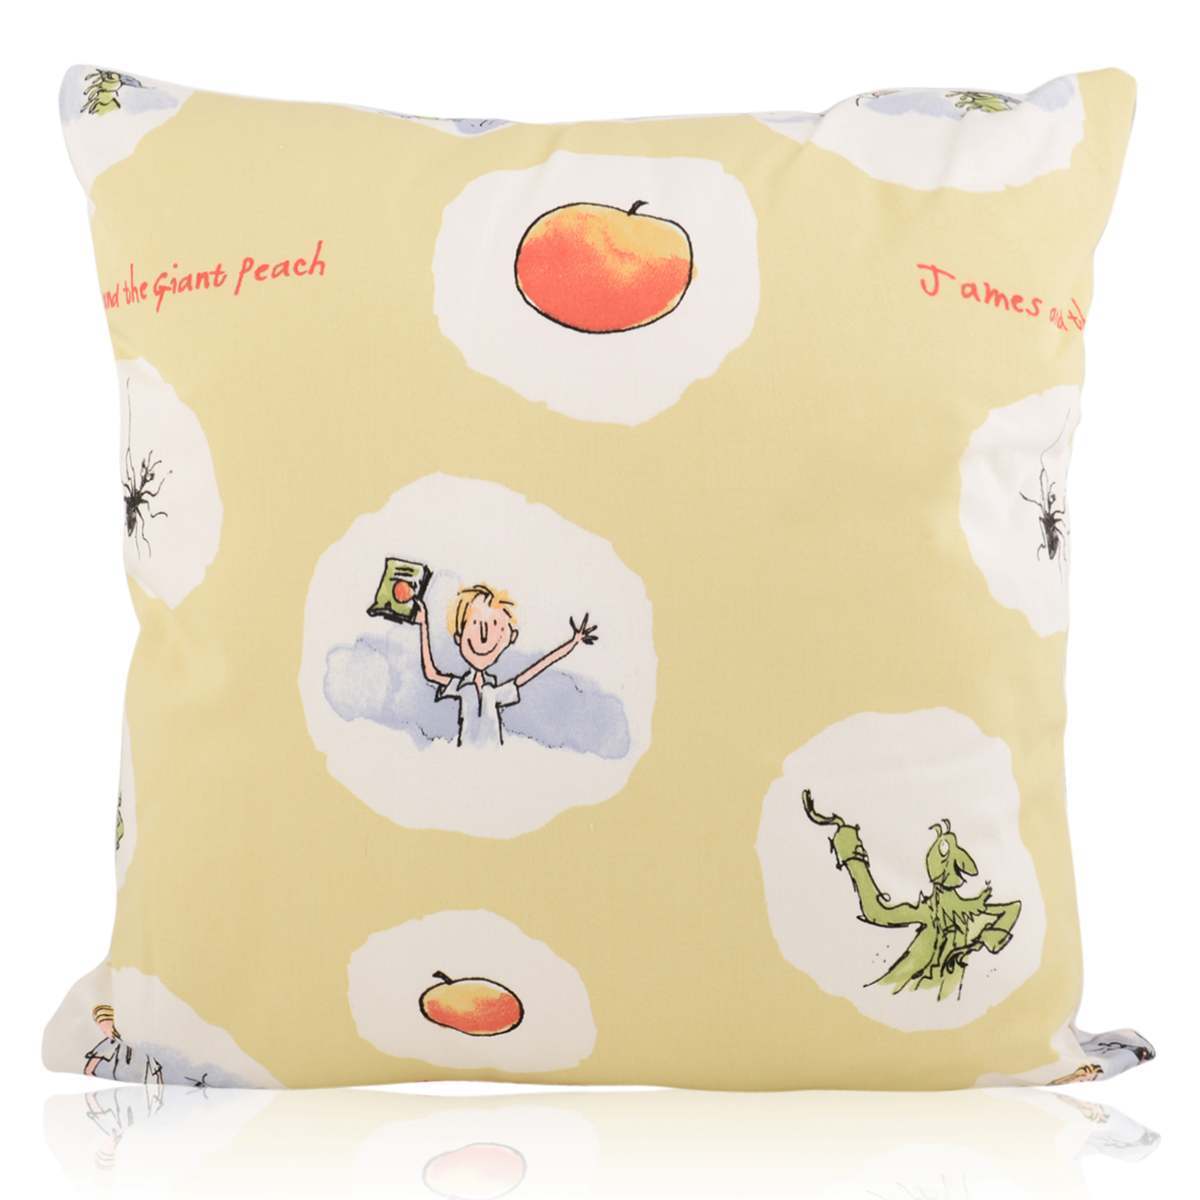 Roald Dahl 'James and the Giant Peach' Cushion Cover